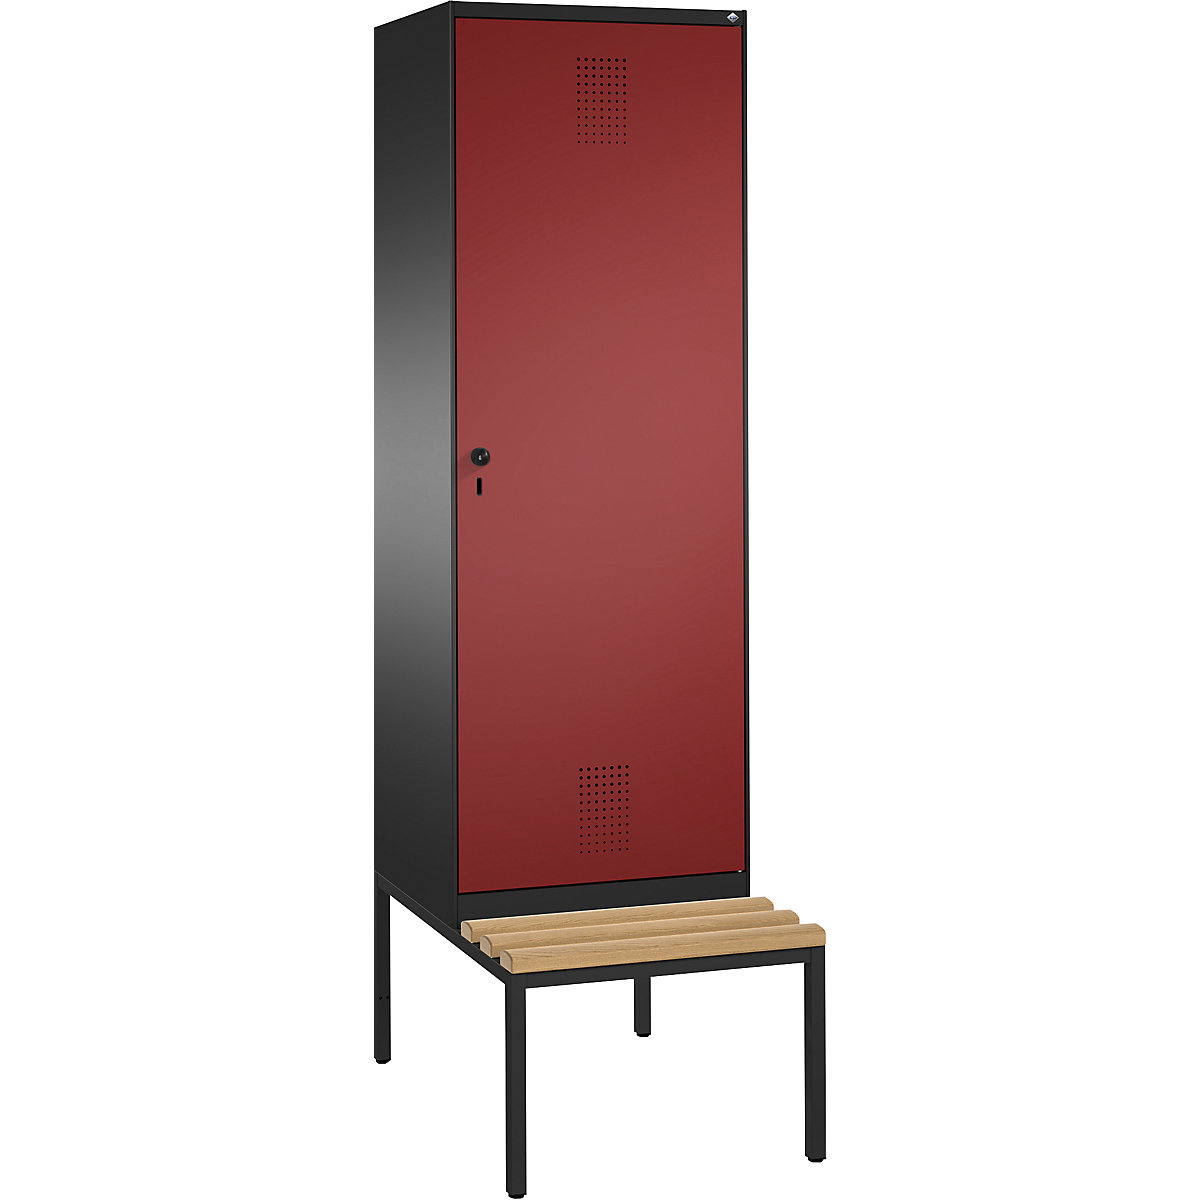 Šatní skříň s lavicí EVOLO s dveřmi přes 2 oddíly – C+P, 2 oddíly, 1 dveře, šířka oddílu 300 mm, černošedá / rubínová-11